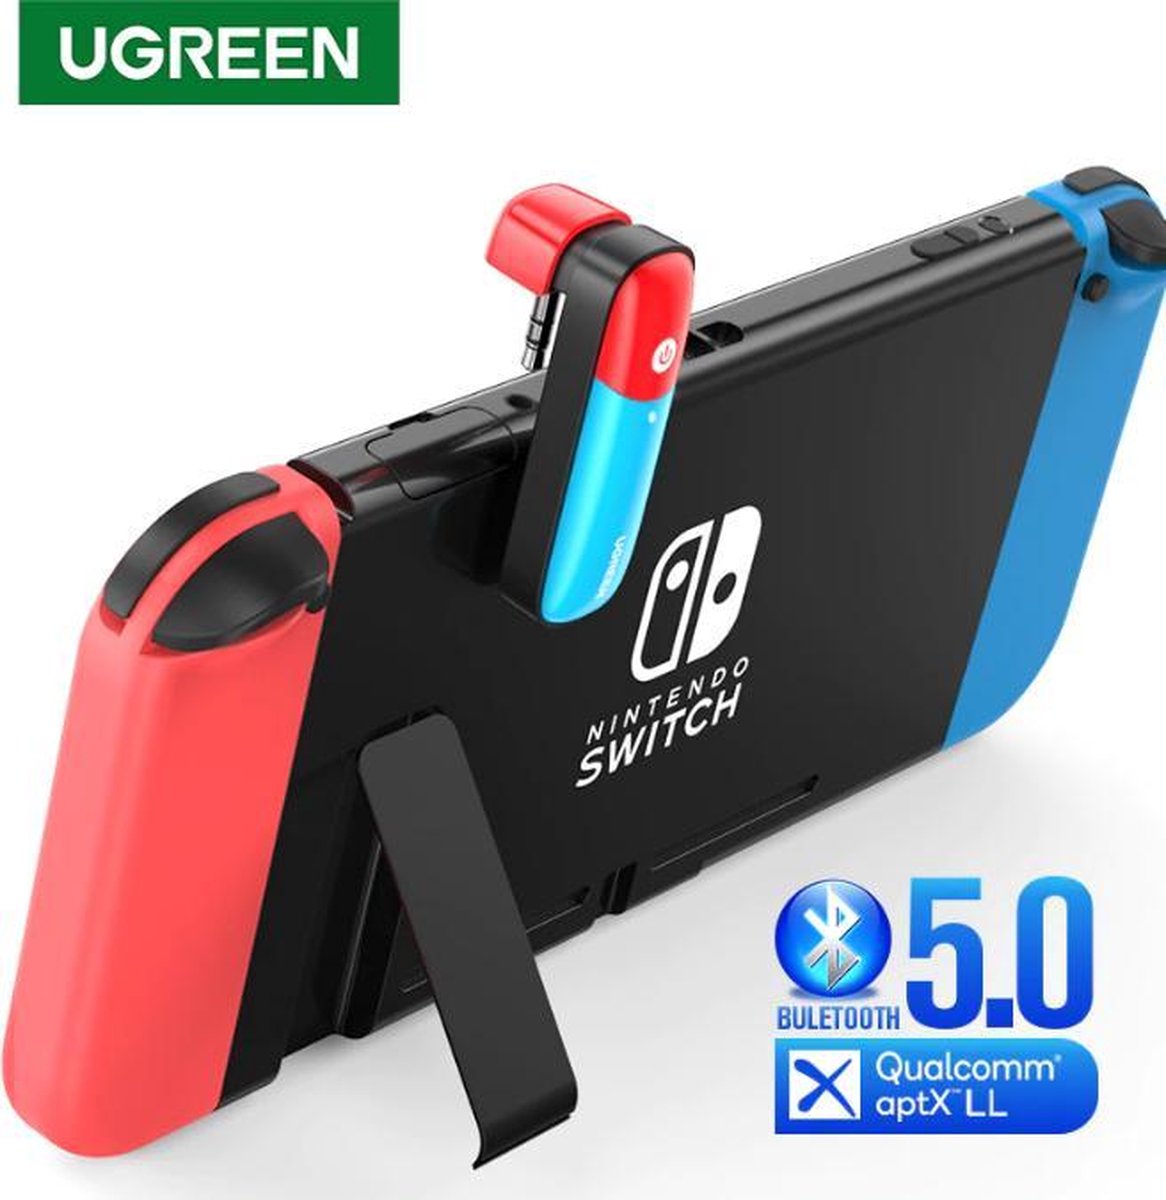 Ugreen Bluetooth 5.0 zender voor Nintendo Switch - Geluid via Bluetooth Koptelefoon/Speaker/Oortjes- Incl. 2 Thumb Grips - Ugreen